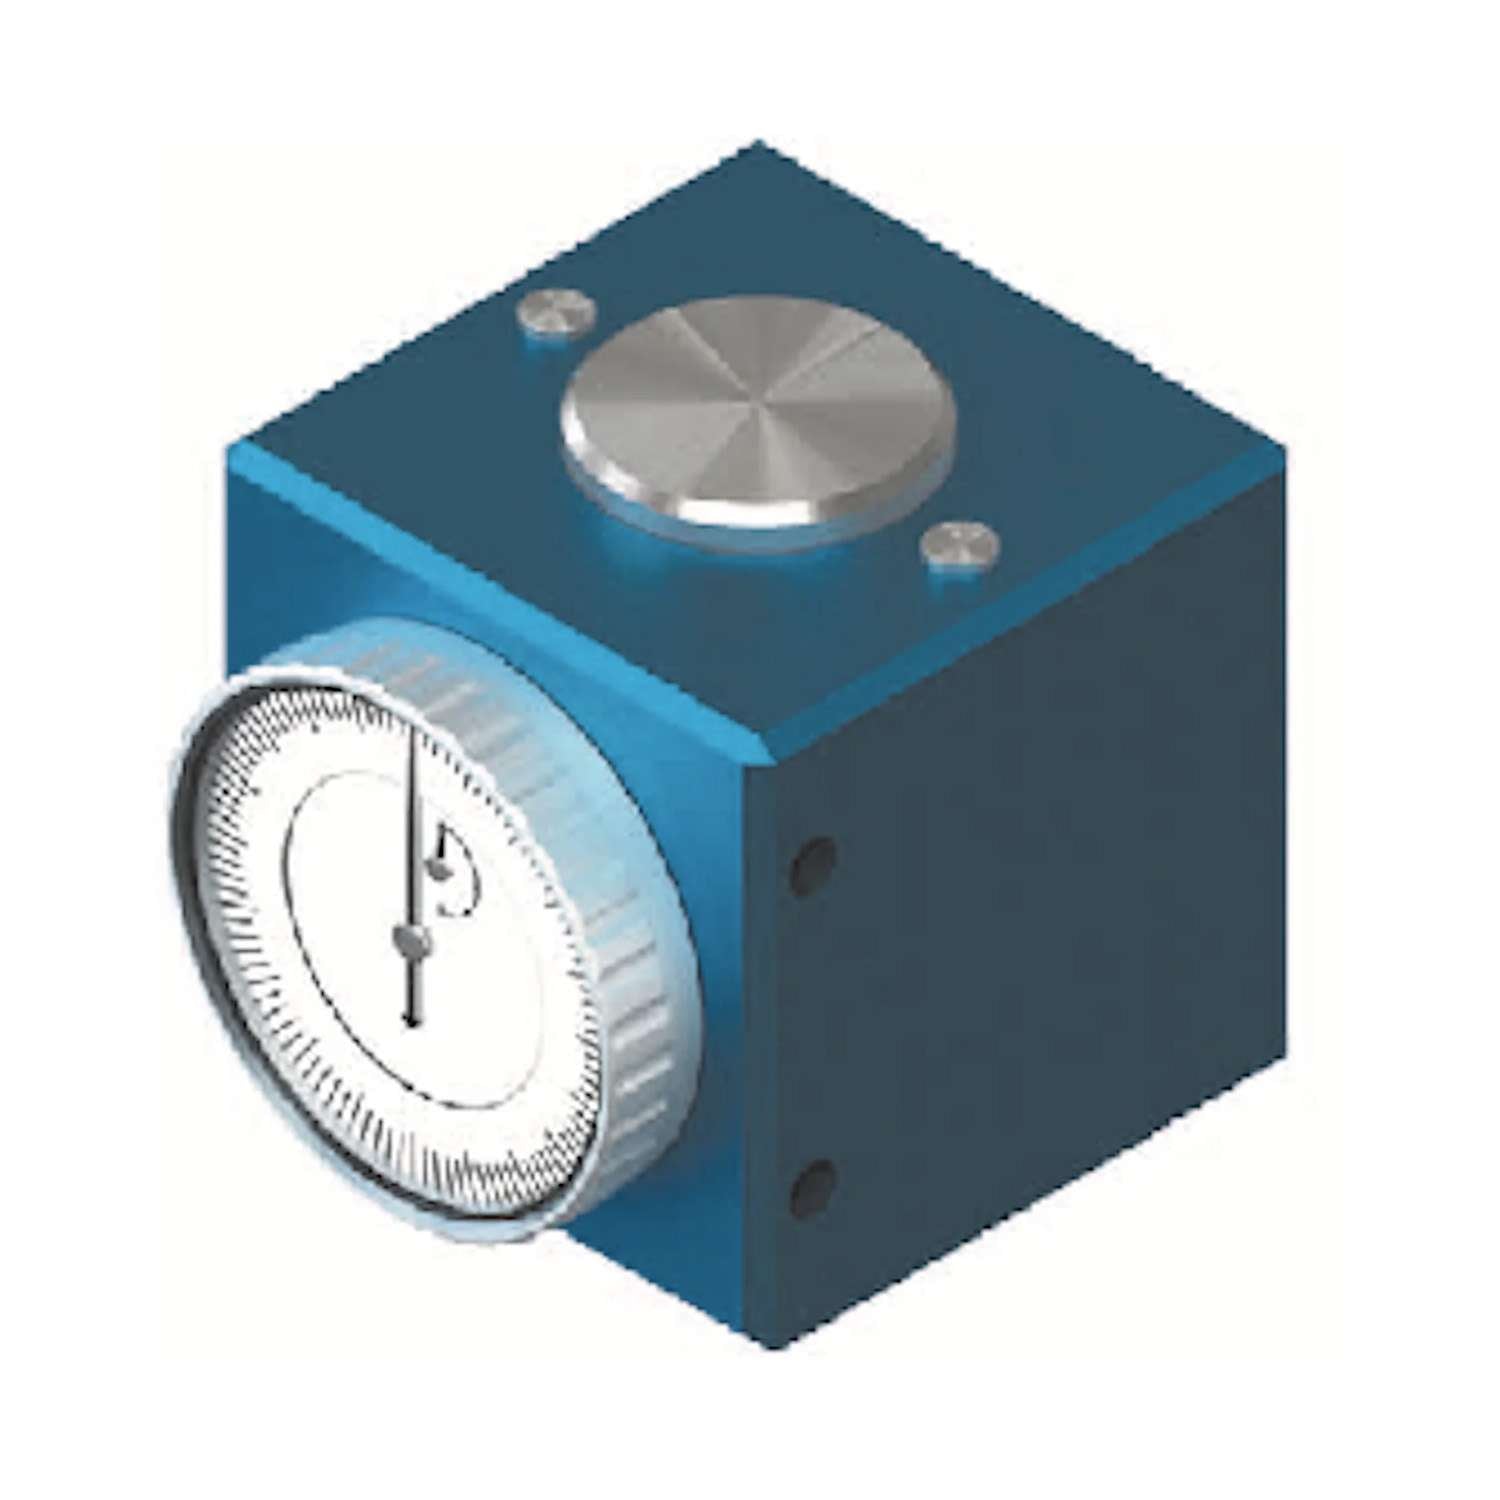 Azzeratore magnetico con comparatore - ZDI 100 - Gait